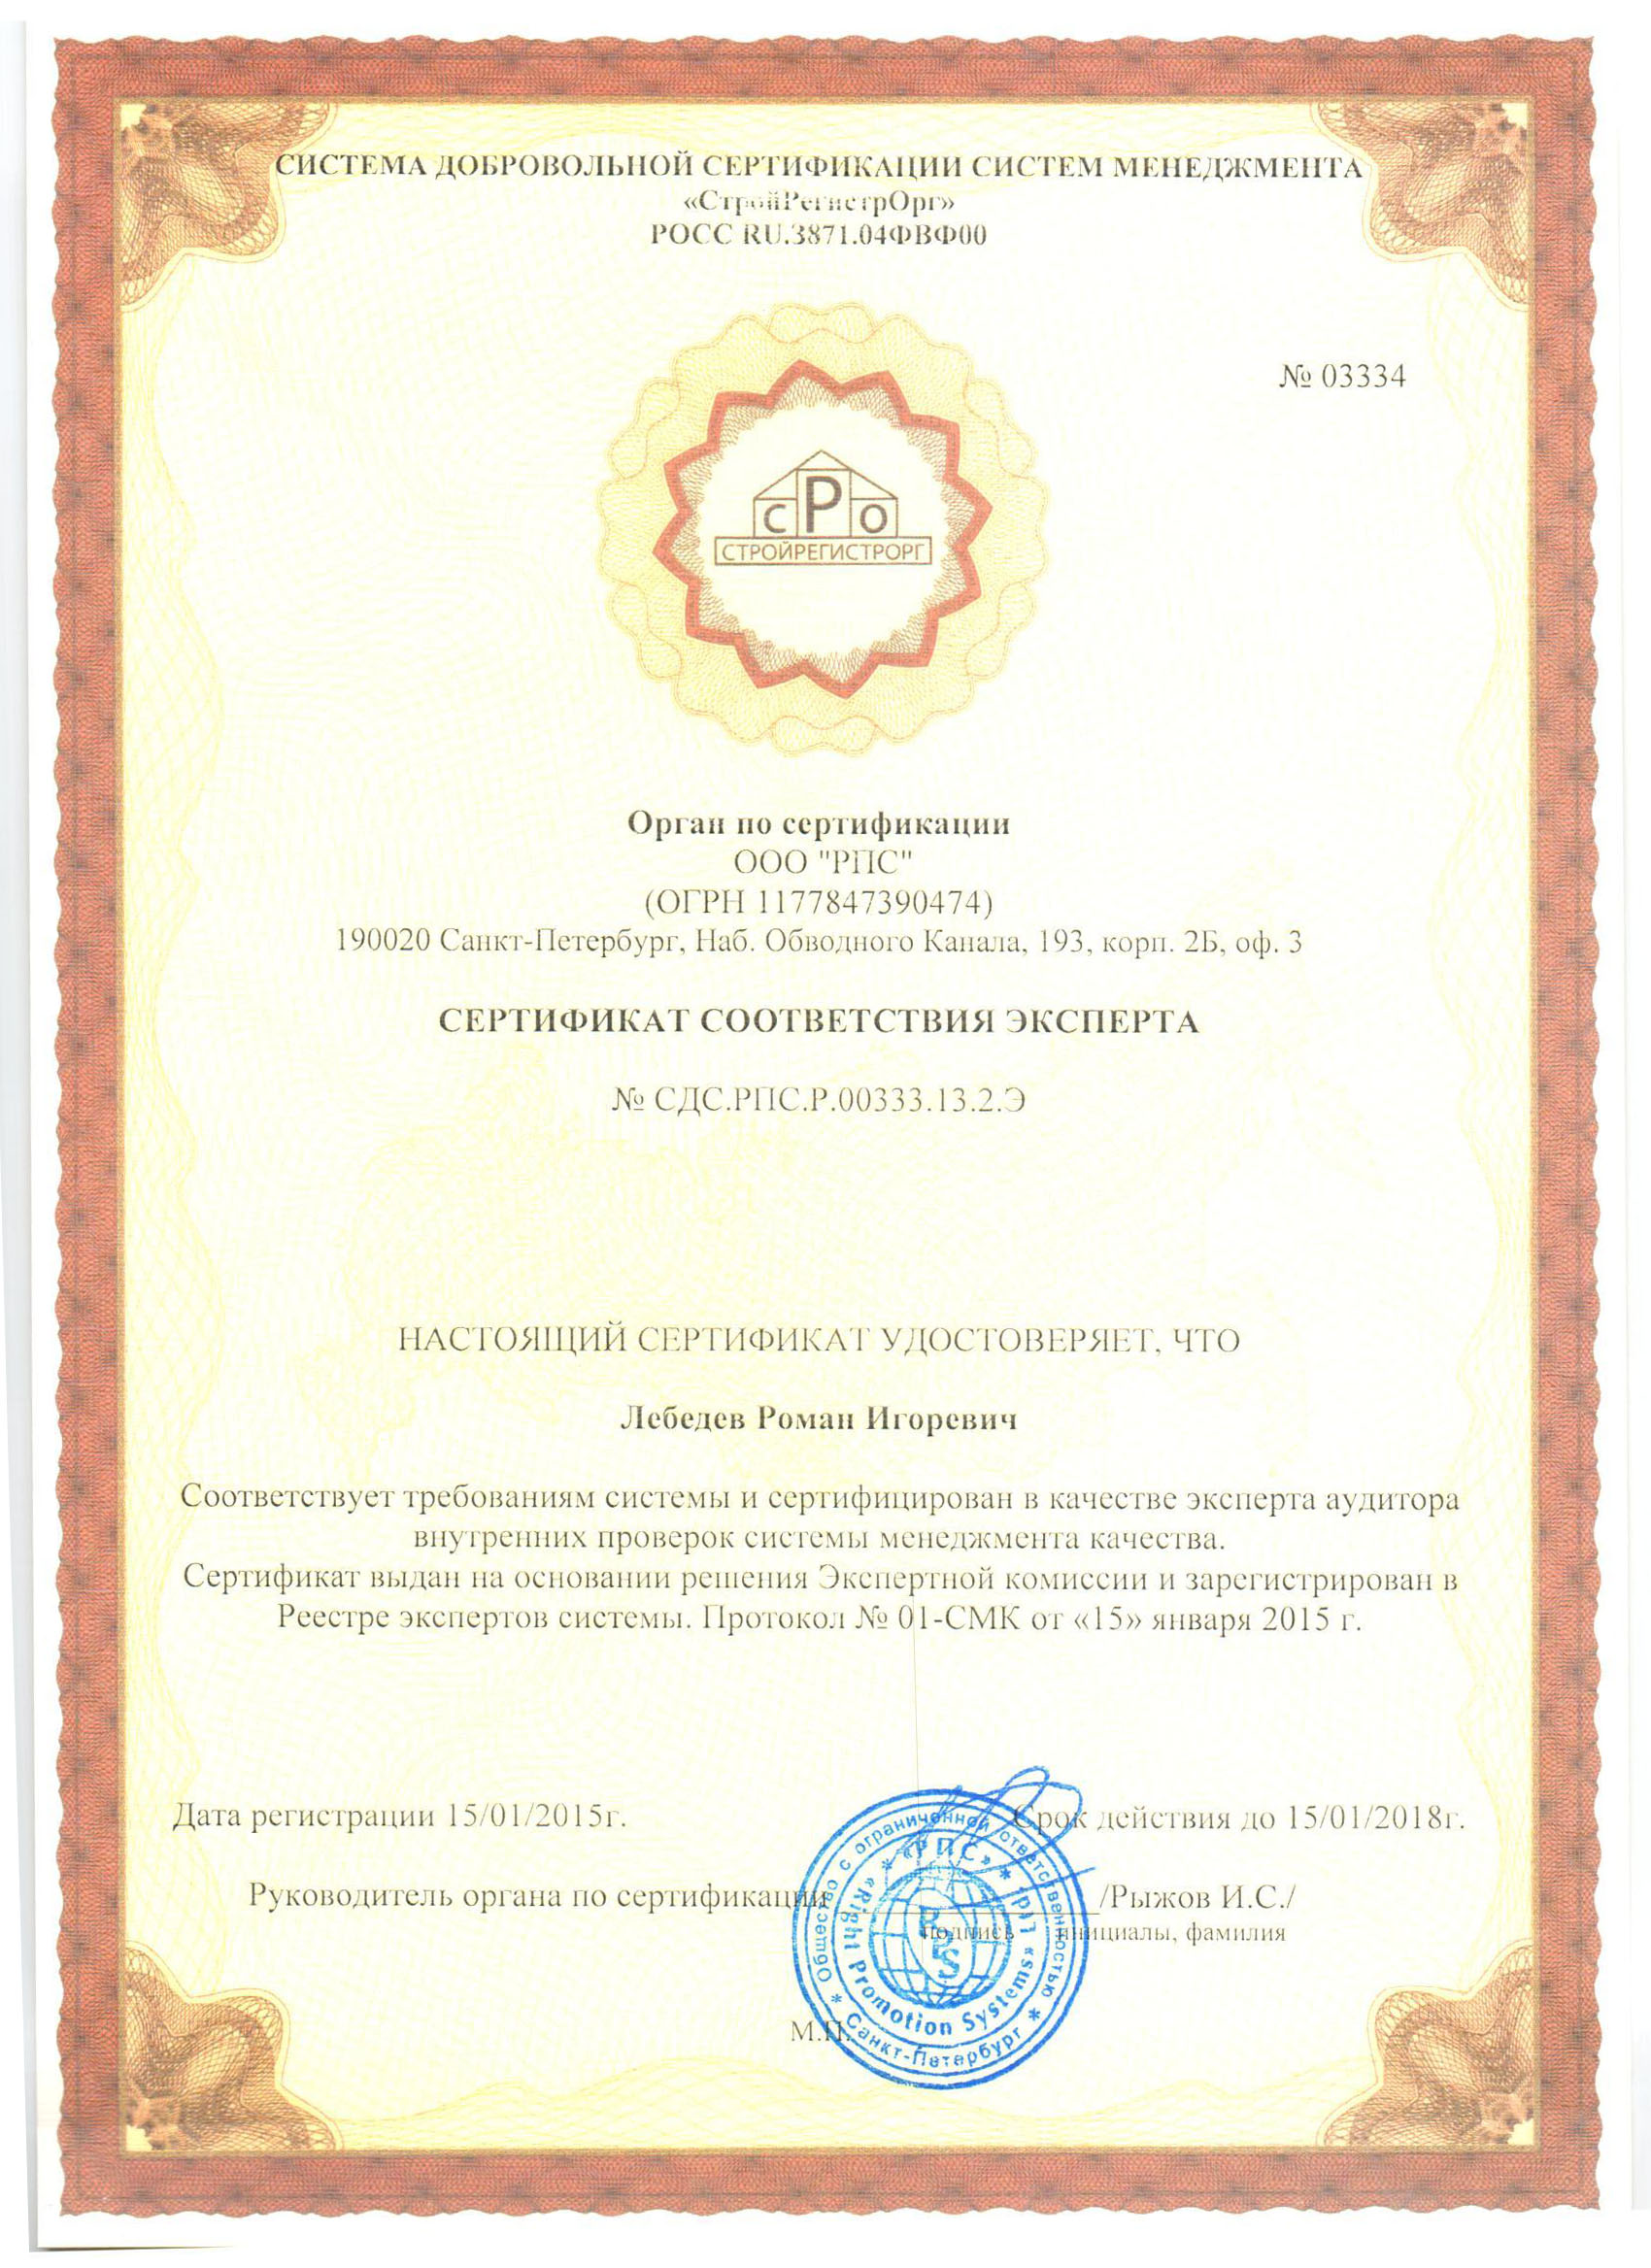 Сертификат соответствия эксперта Лебедев Р.И.